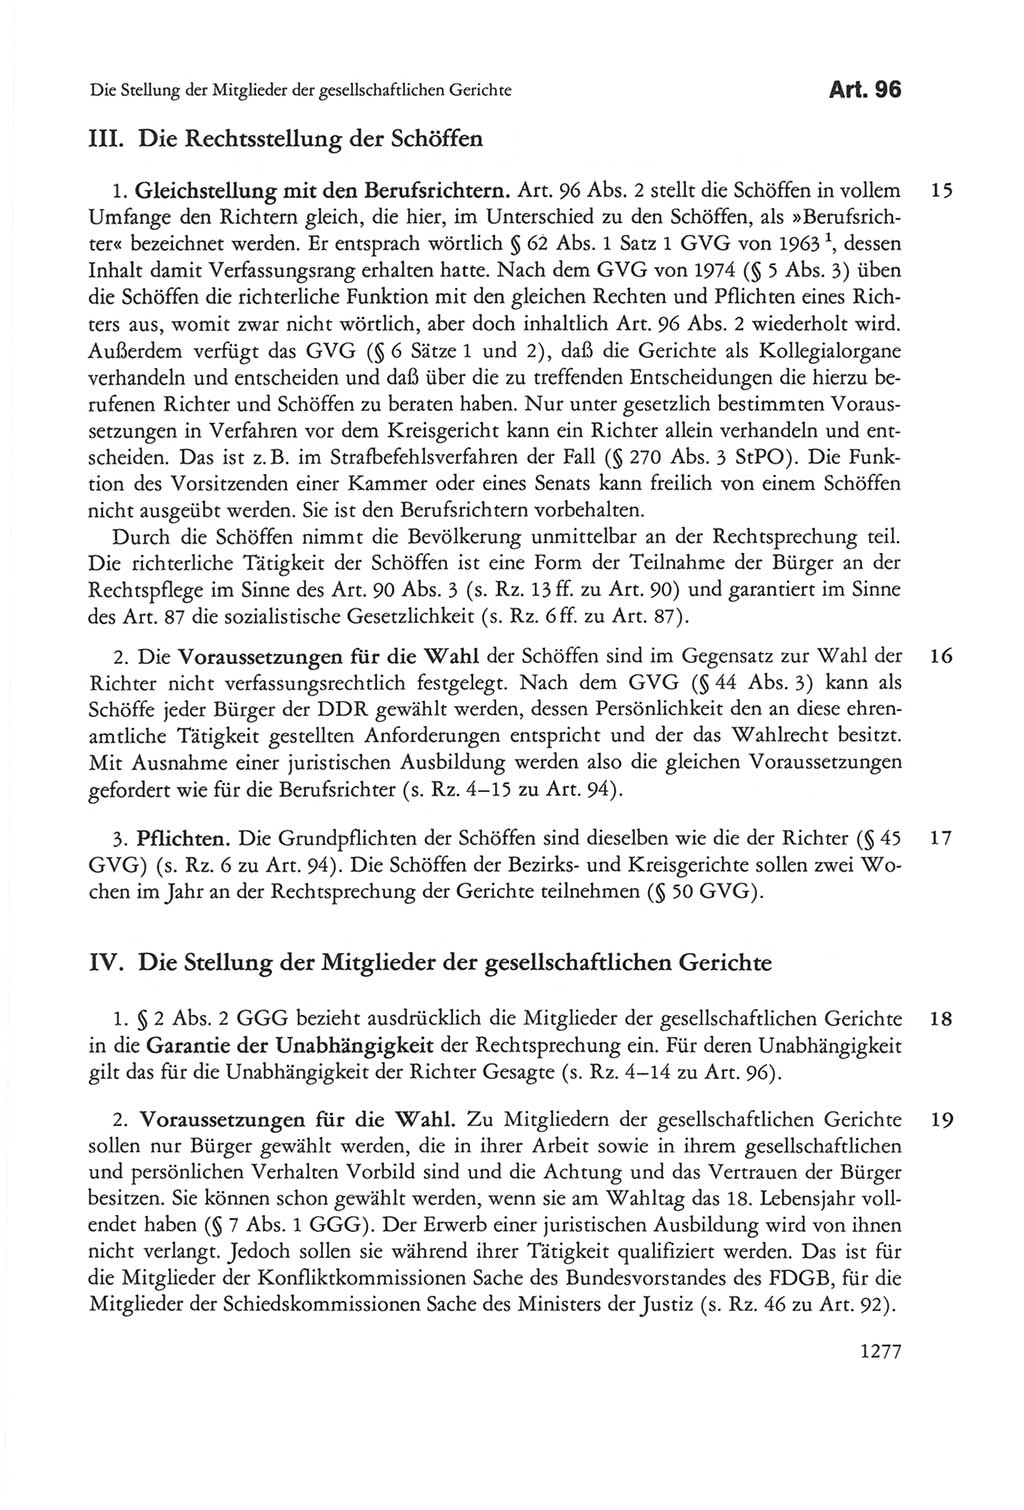 Die sozialistische Verfassung der Deutschen Demokratischen Republik (DDR), Kommentar 1982, Seite 1277 (Soz. Verf. DDR Komm. 1982, S. 1277)